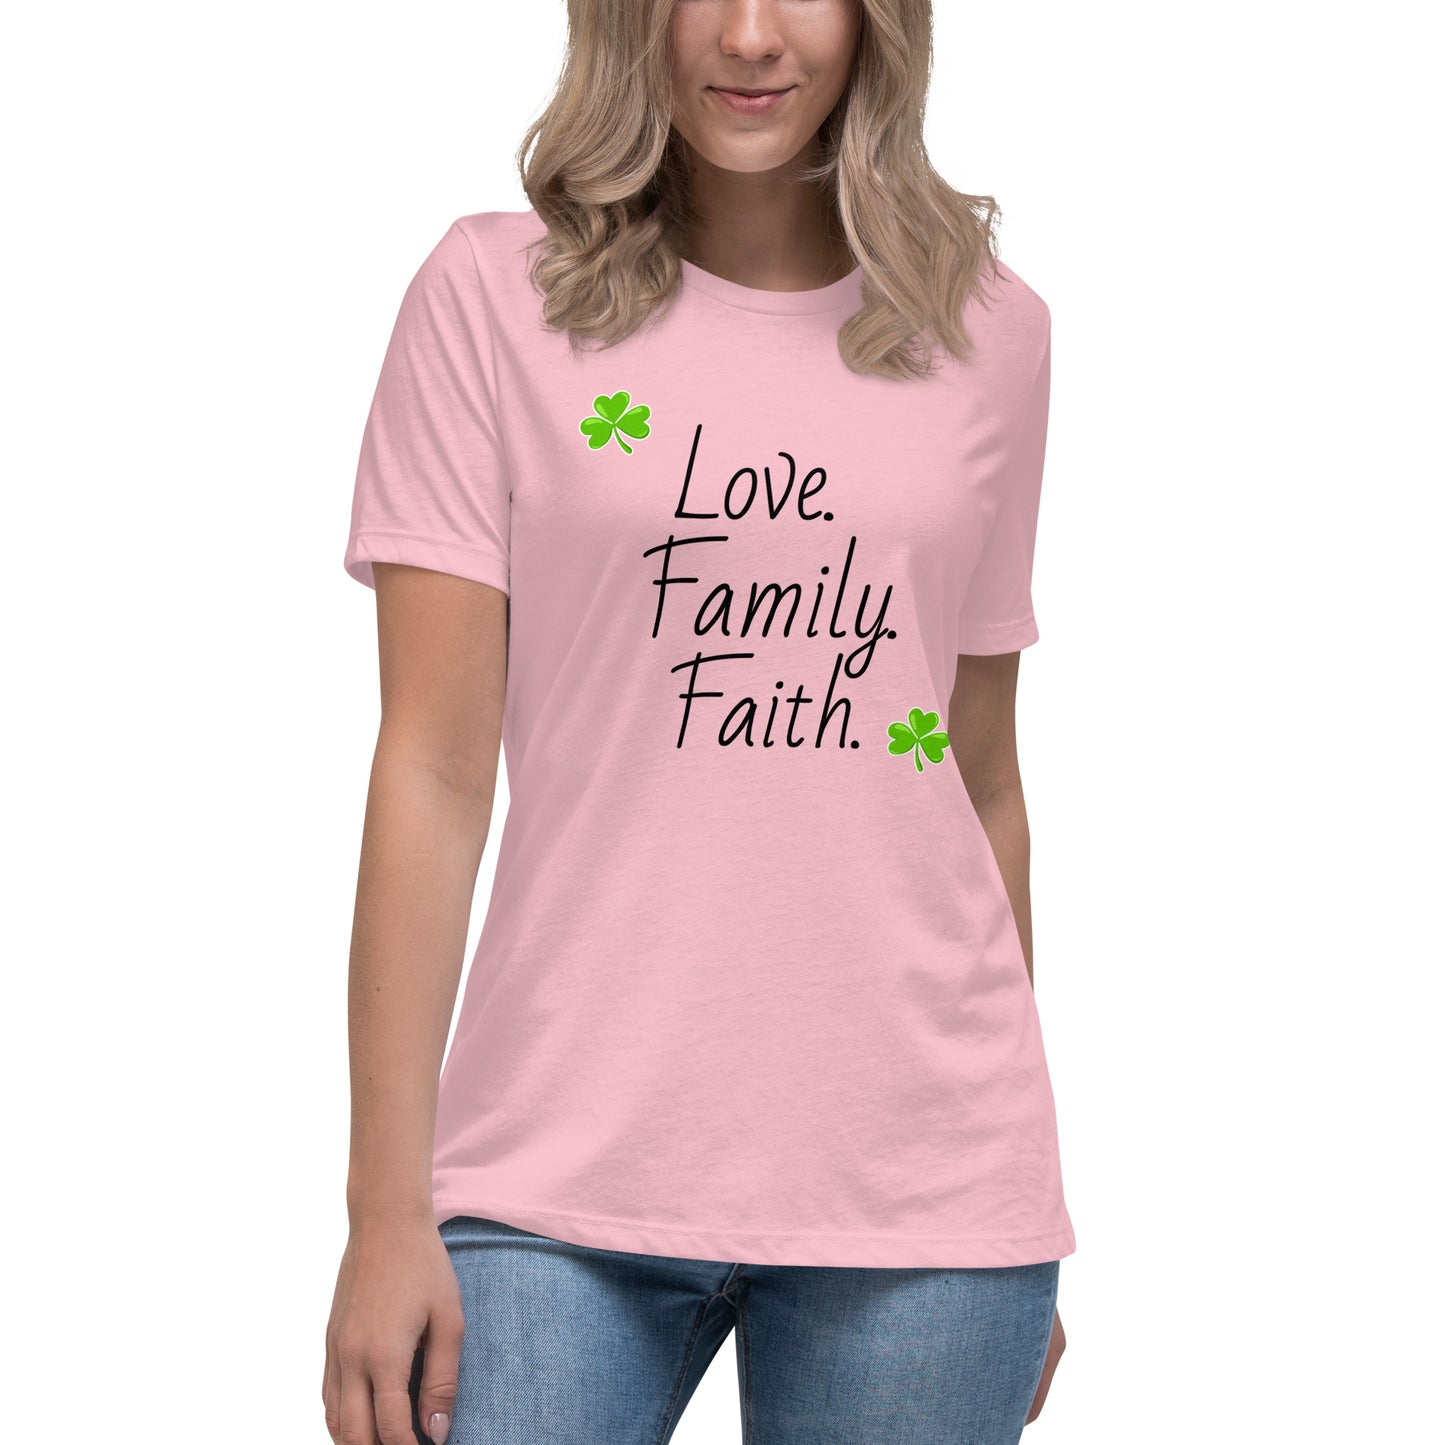 Love, Family, Faith women's tee (black lettering)